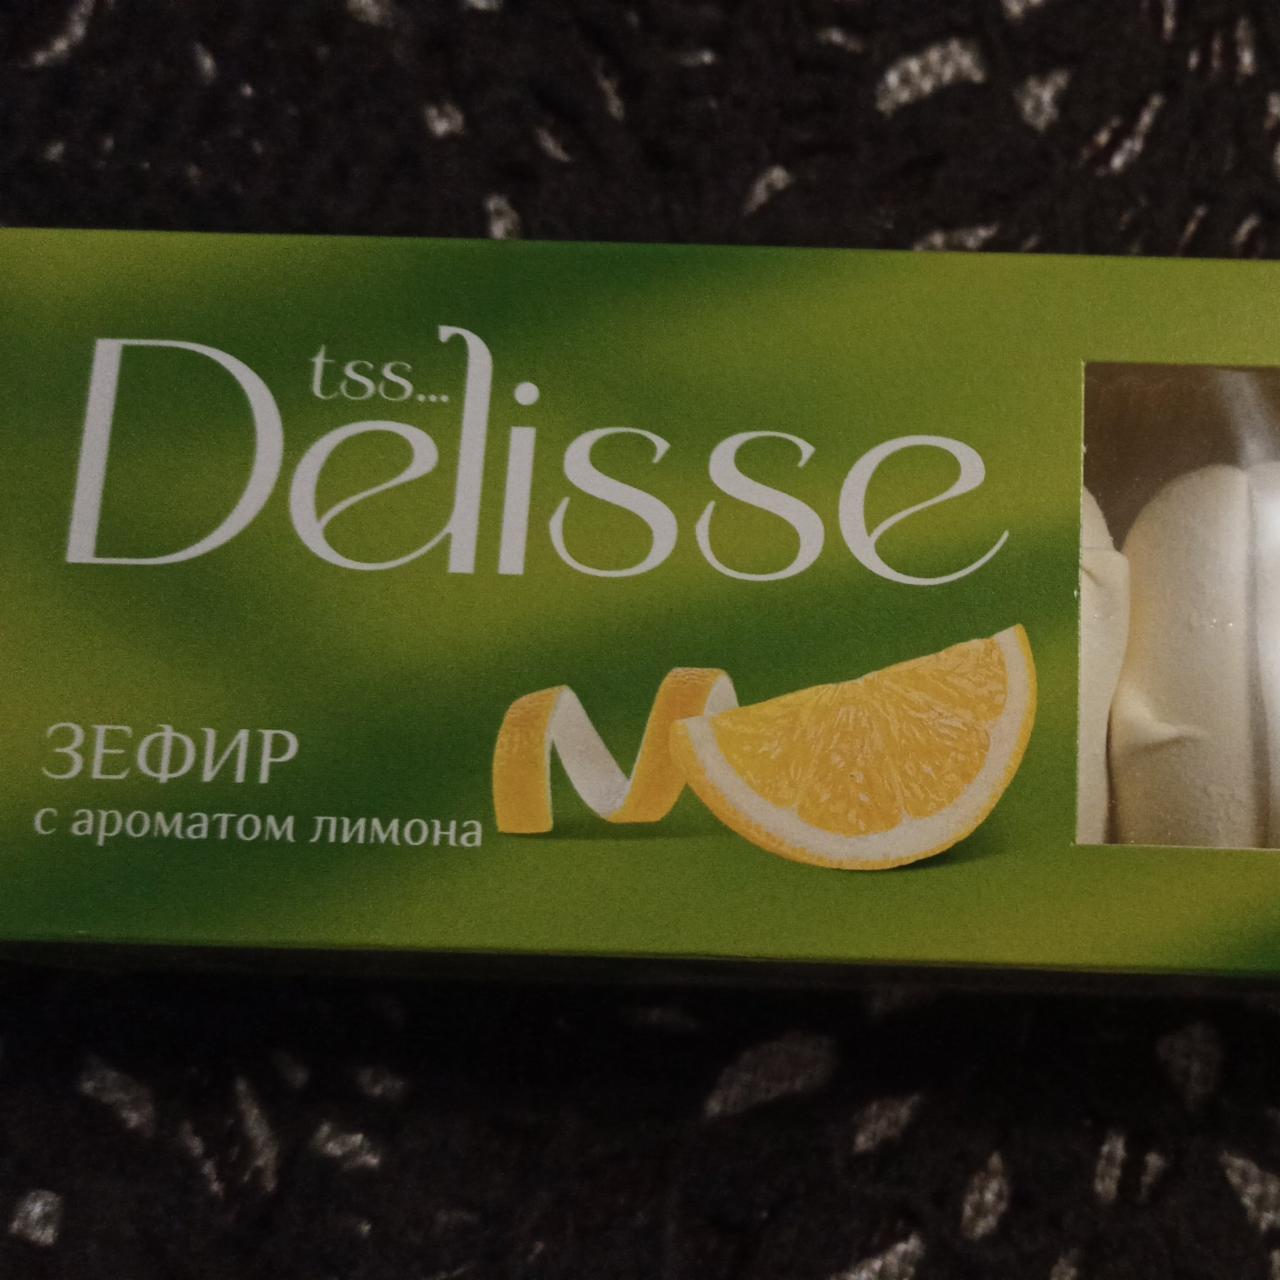 Фото - зефир с ароматом лимона tss... Delisse